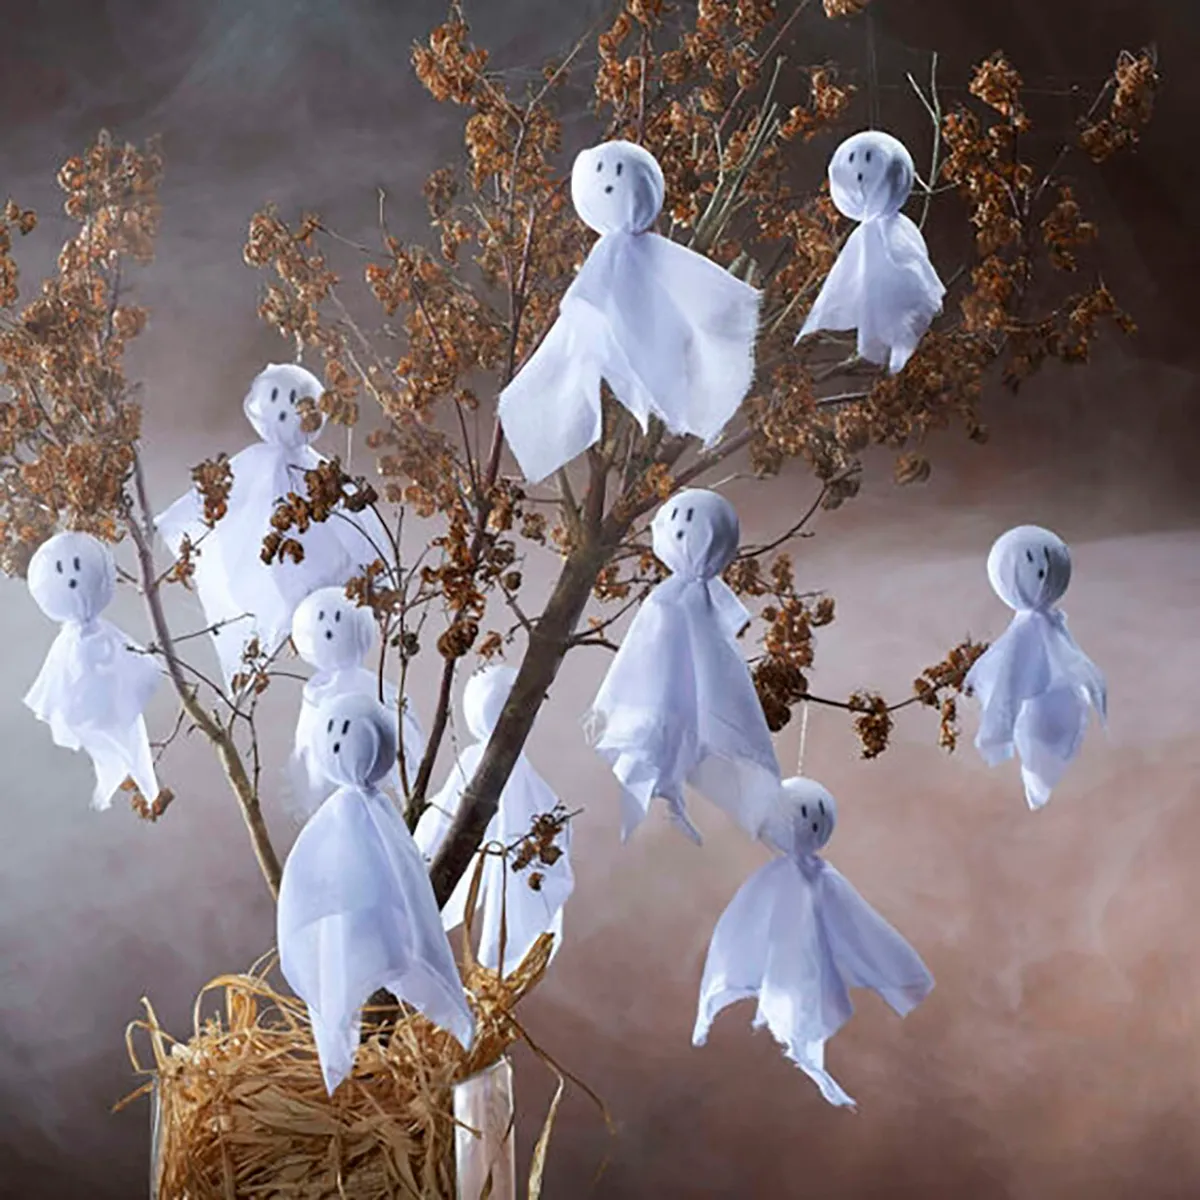 Spooky ghost tree diy